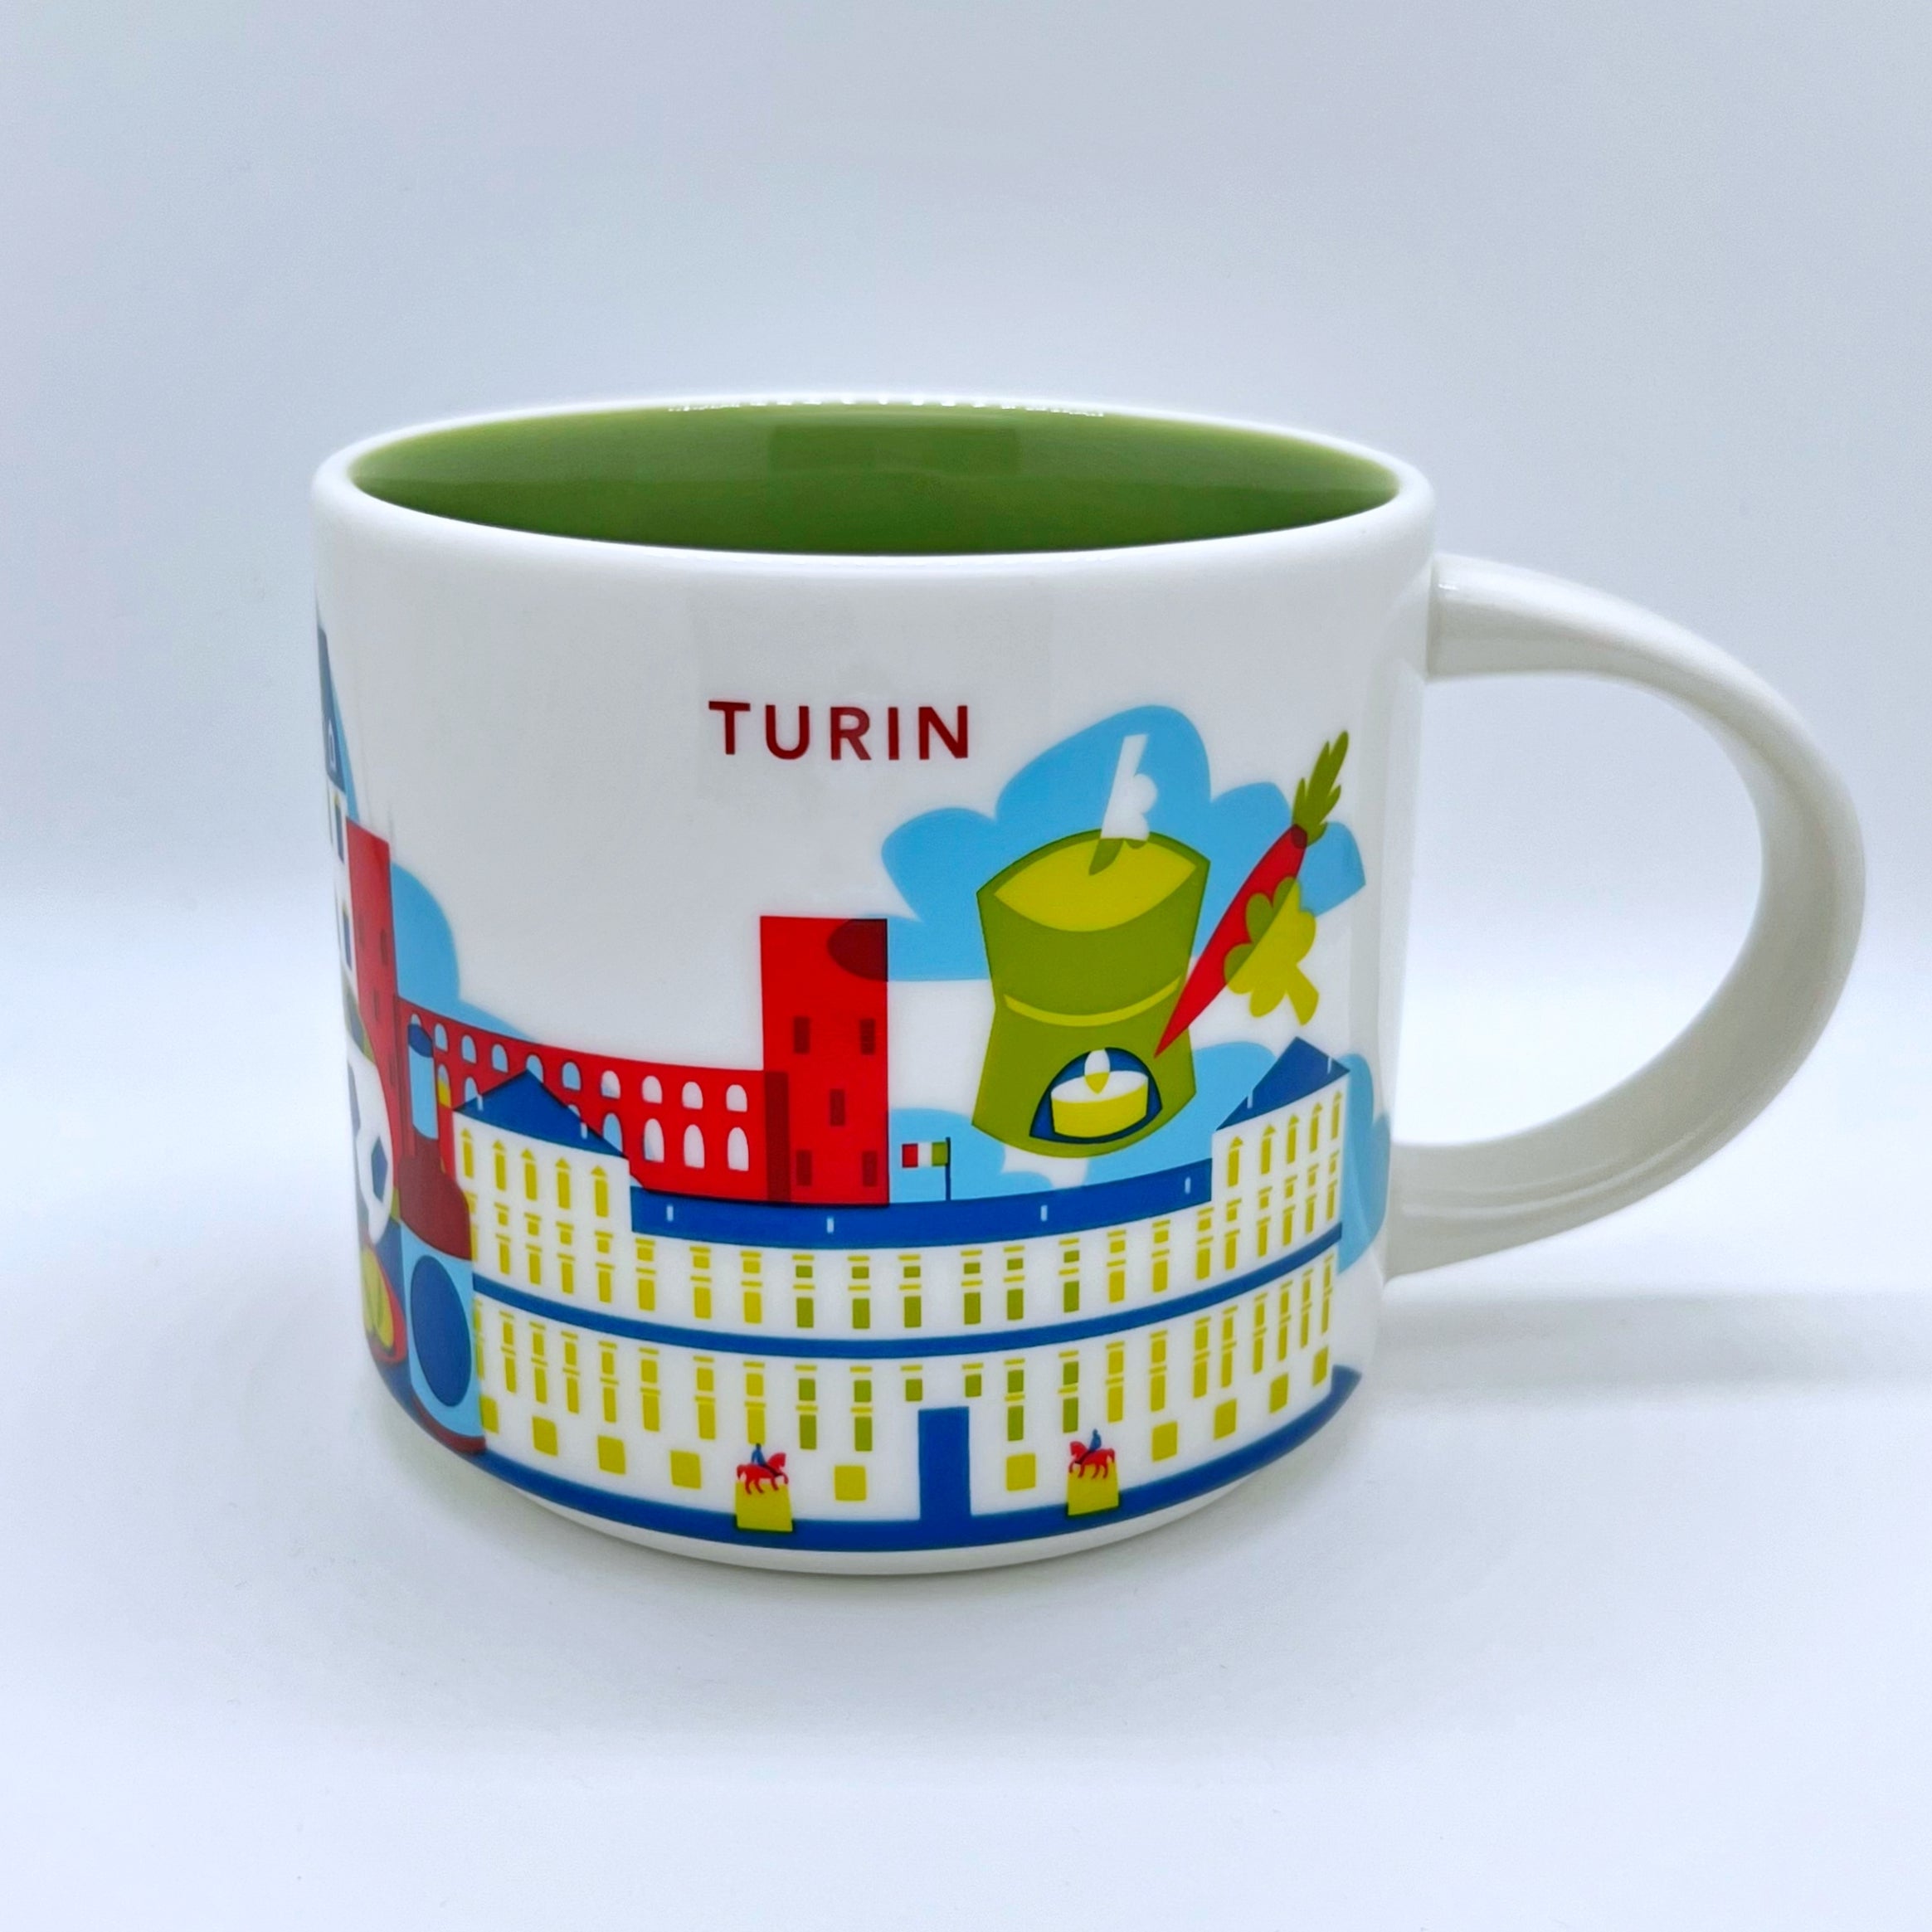 Turin City Kaffee Tasse